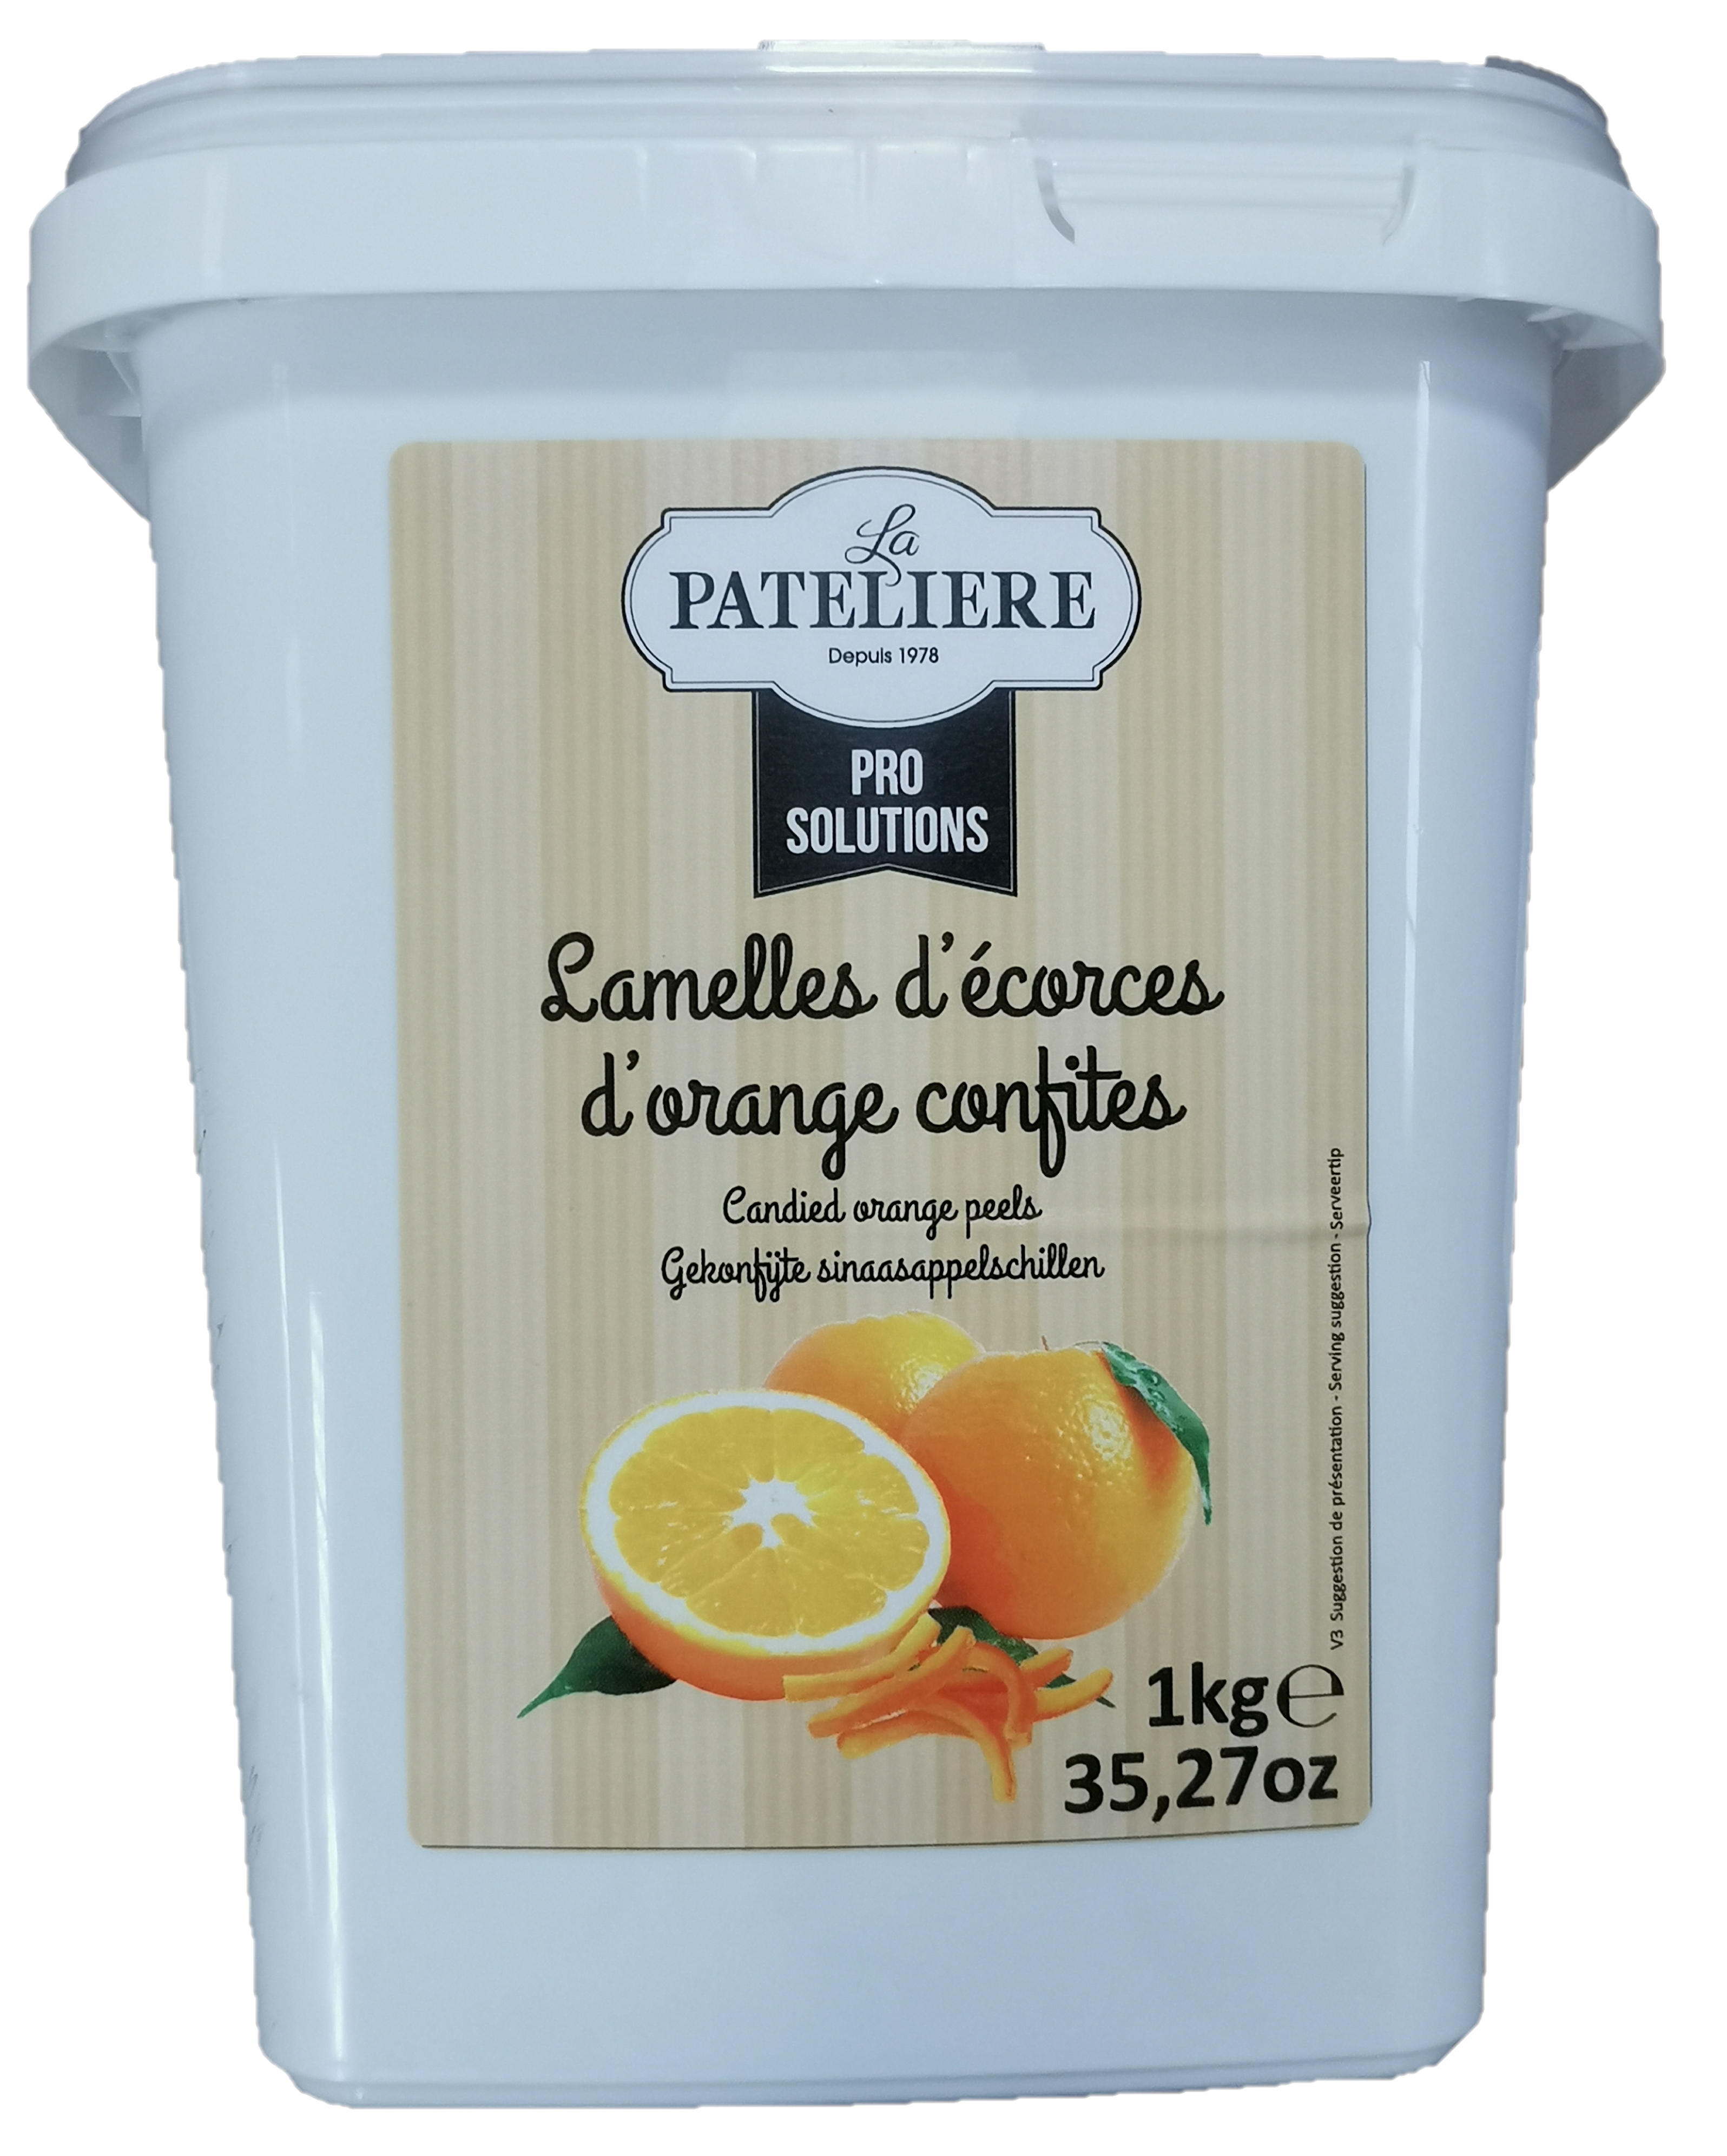 Écorces d'oranges confites provenant d' oranges de Calabre.